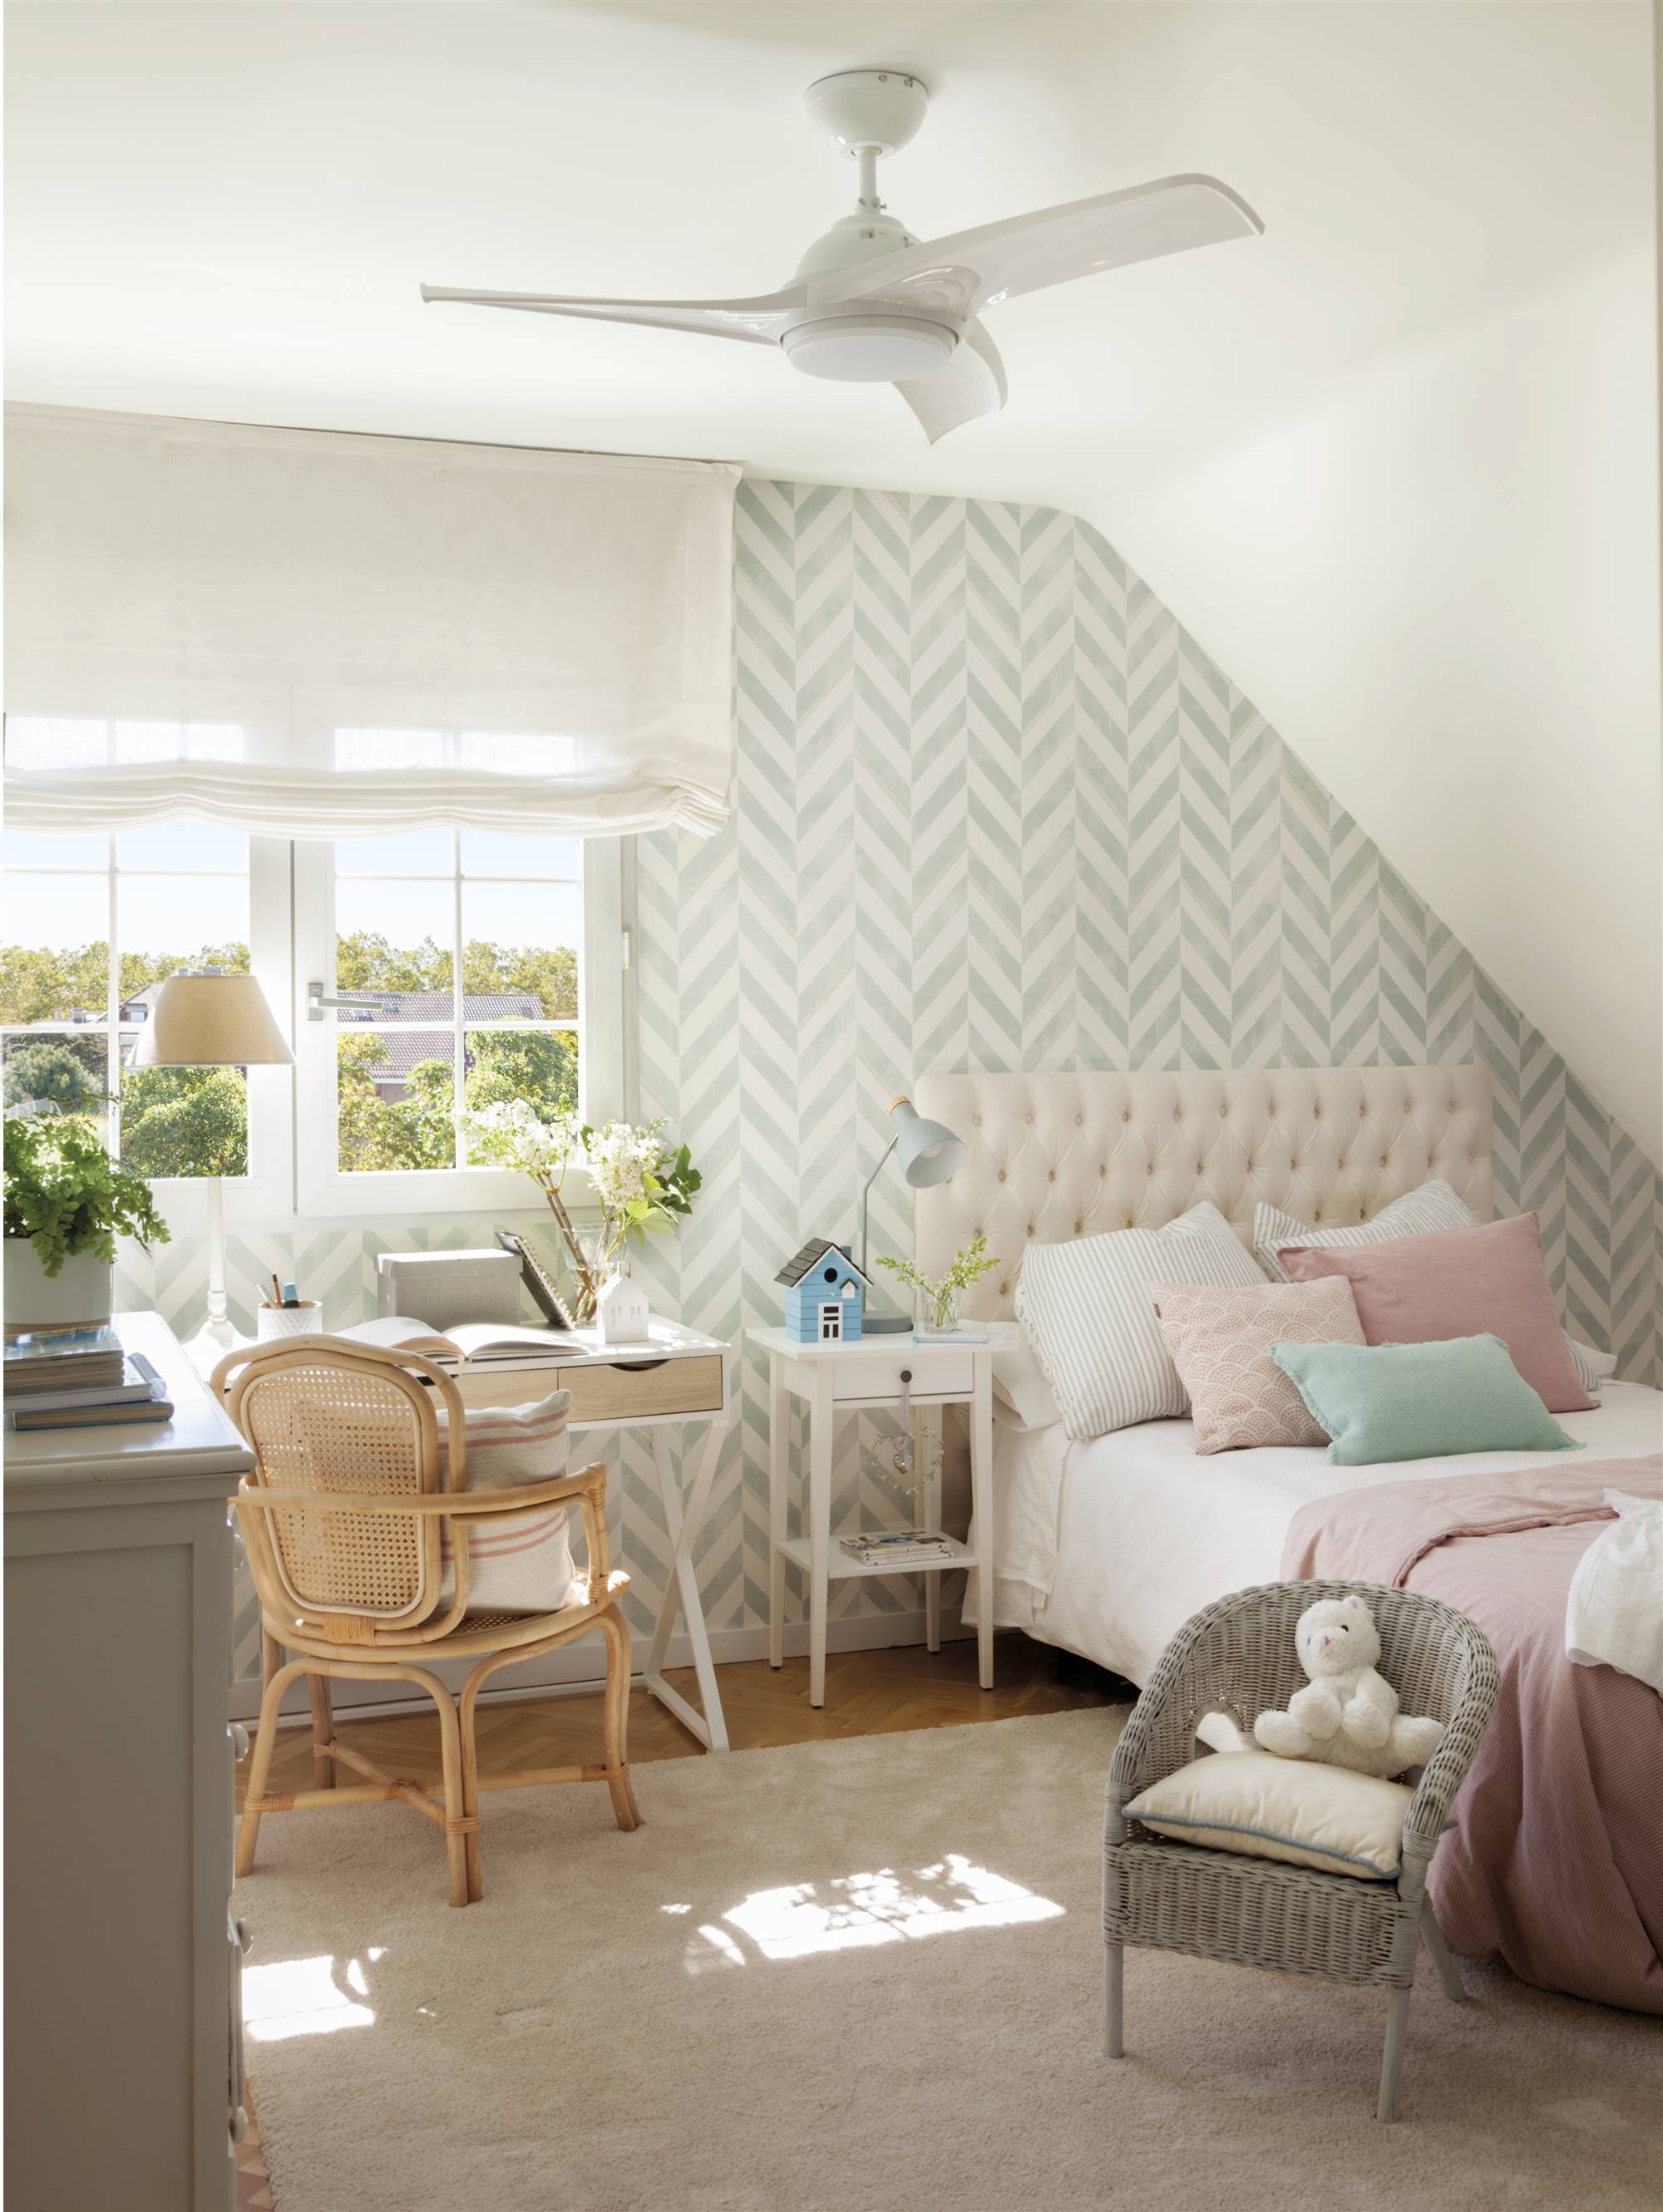 Dormitorio infantil con papel pintado geome´trico azul y blanco 00538307